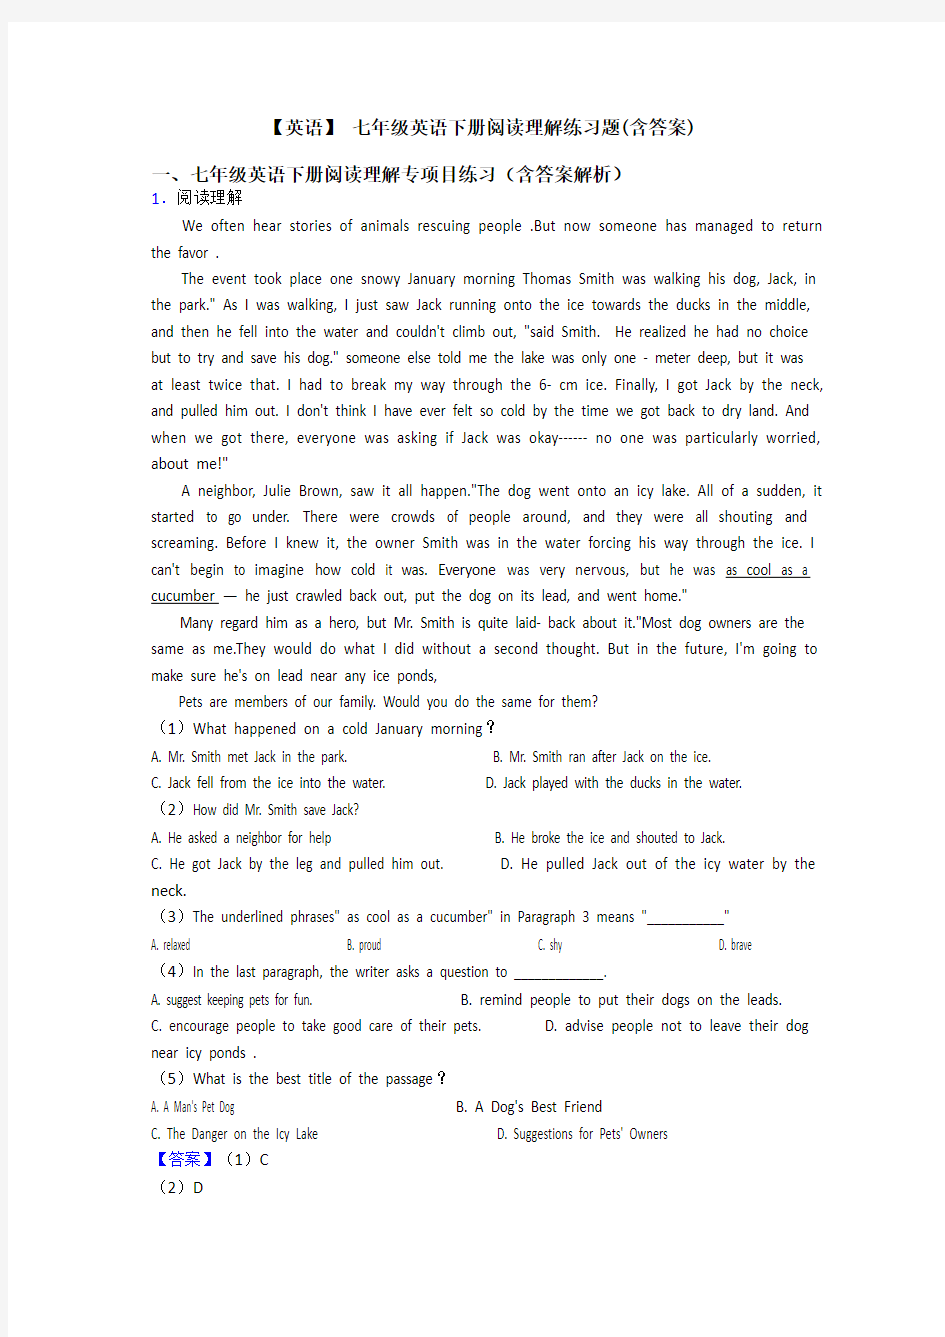 【英语】 七年级英语下册阅读理解练习题(含答案)